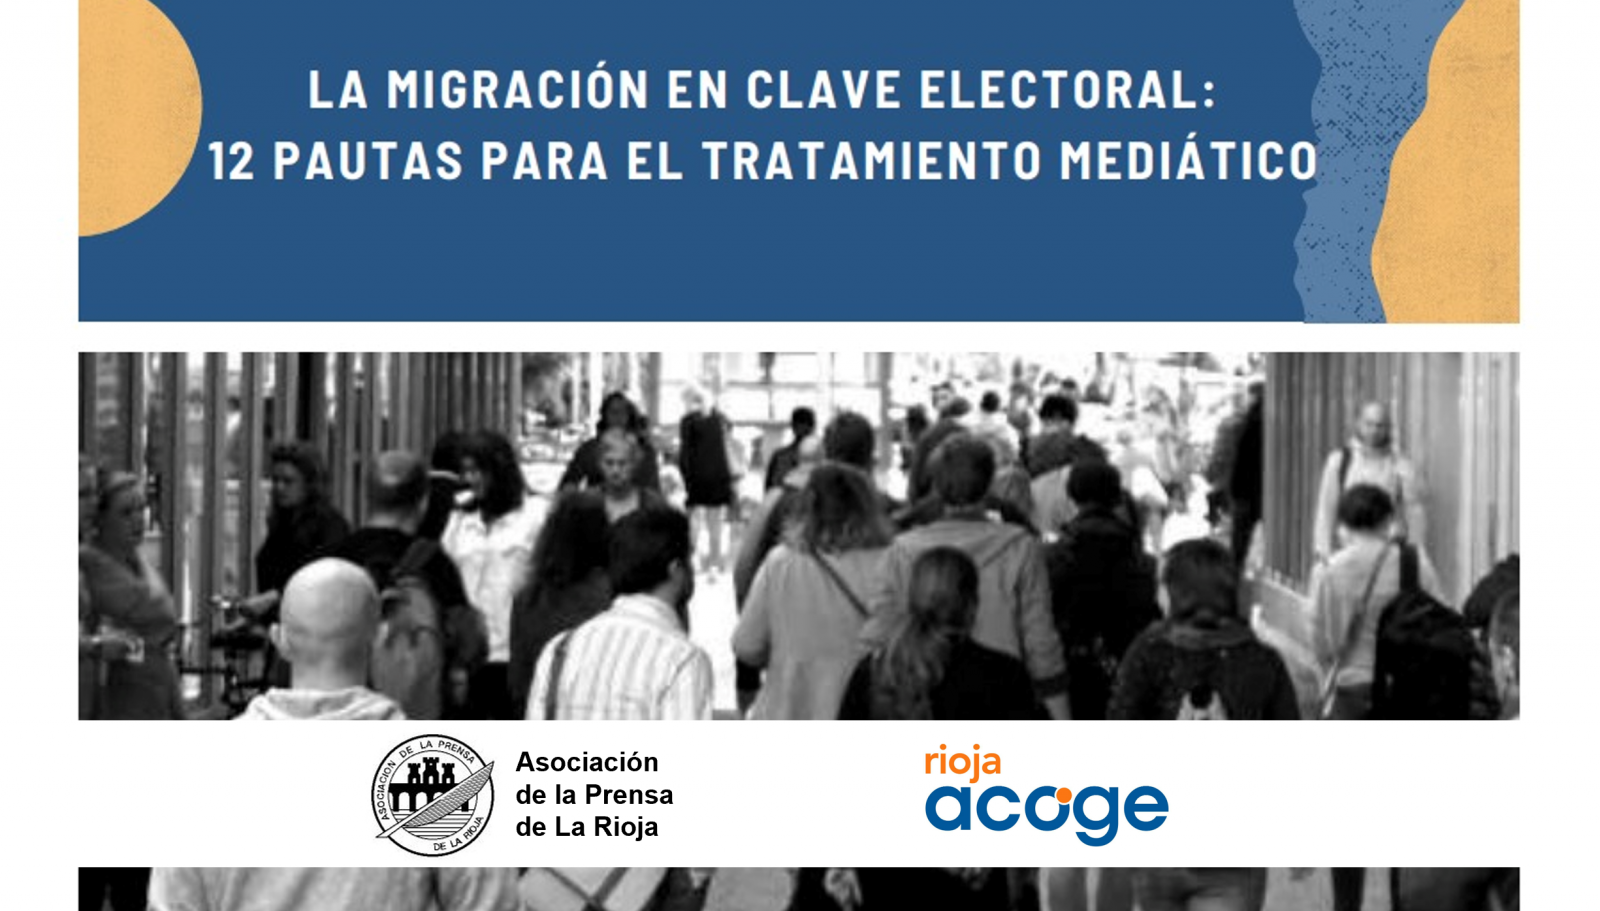 Pautas periodísticas sobre migración en clave electoral